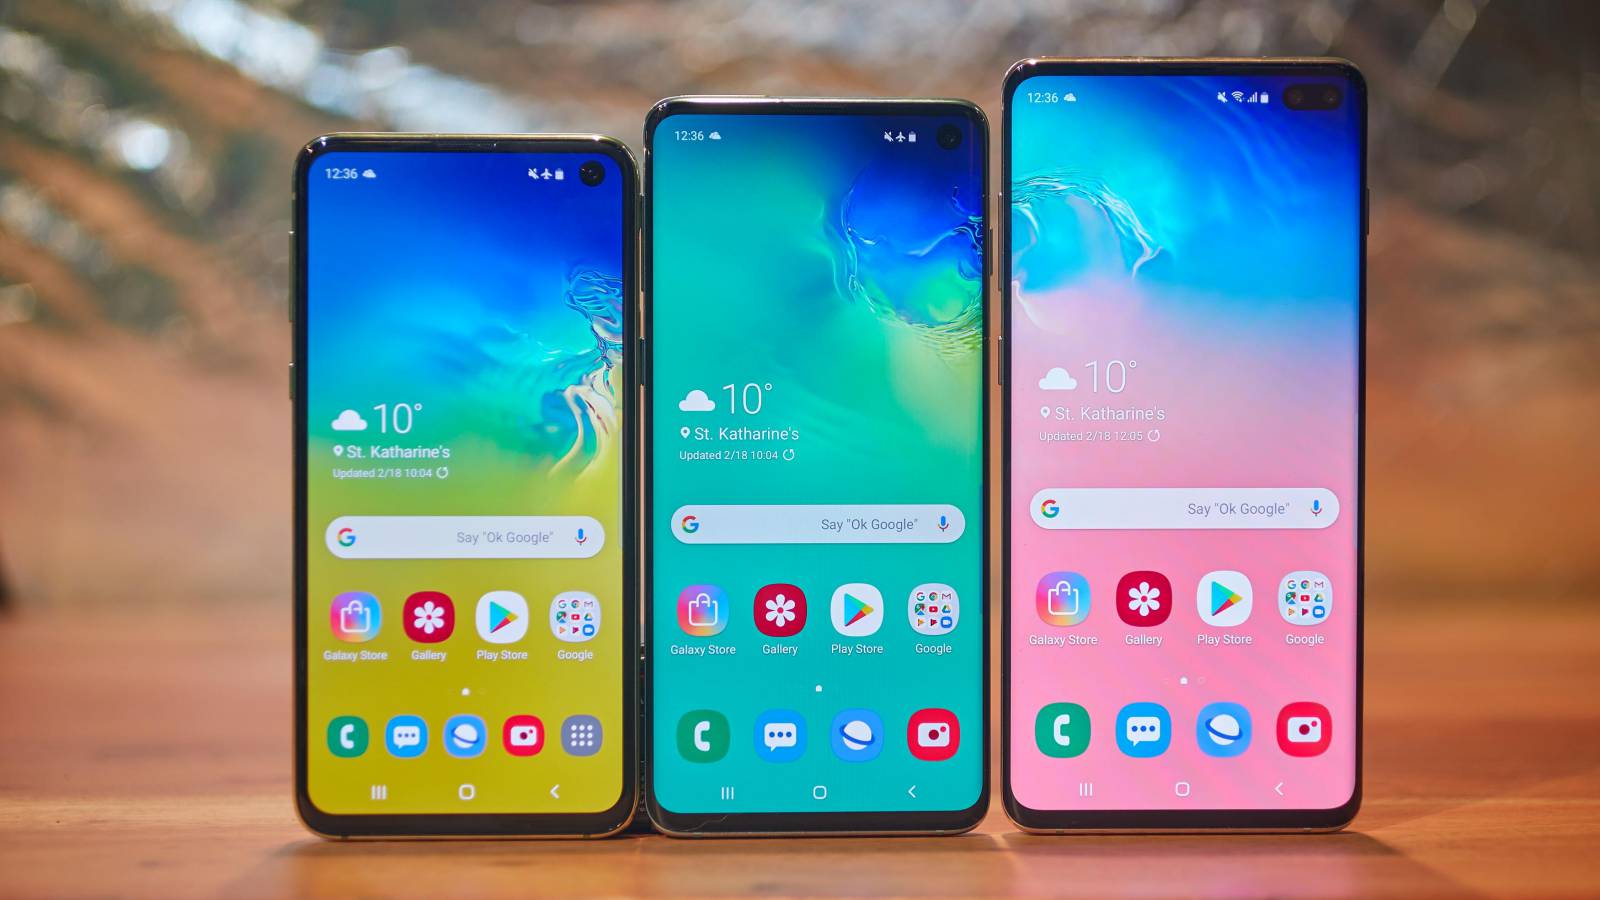 Samsung Galaxy S10 update September 2019